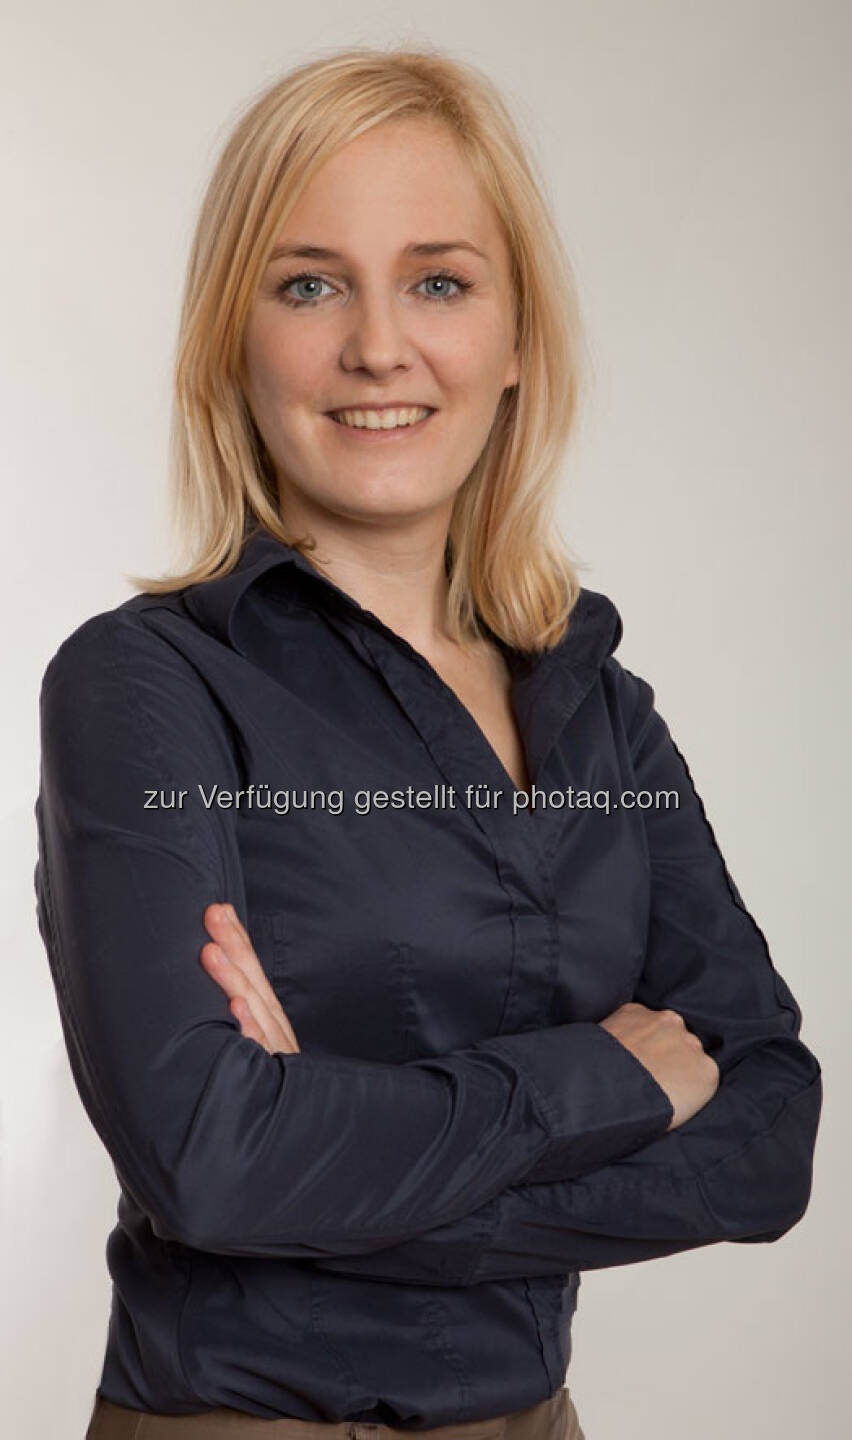 Julia Wawrik (38) nahm mit 1. April 2013 ihre Funktion als geschäftsführende Gesellschafterin von Messerscharf, einer spezialisierten Agentur für digitale Finanz- und Unternehmenskommunikation, auf. Sie ist ab sofort für das operative Geschäft und die Expansion der Digitalagentur verantwortlich. Die studierte Handelswirtin startete ihre Karriere im Jahr 2000 bei der ecetra Central European e-Finance AG. Nach mehreren Stationen bei der ORF-Enterprise GmbH & Co KG kehrte Julia Wawrik 2010 zur Brokerjet Bank AG, dem Onlinebroker der Erste Group, zurück. Dort war sie bis zuletzt Abteilungsleiterin für Marketing & Public Relations und neben dem Konzernauftritt für Österreich auch für den in Tschechien, Polen sowie Slowenien verantwortlich (c) Aussendung 